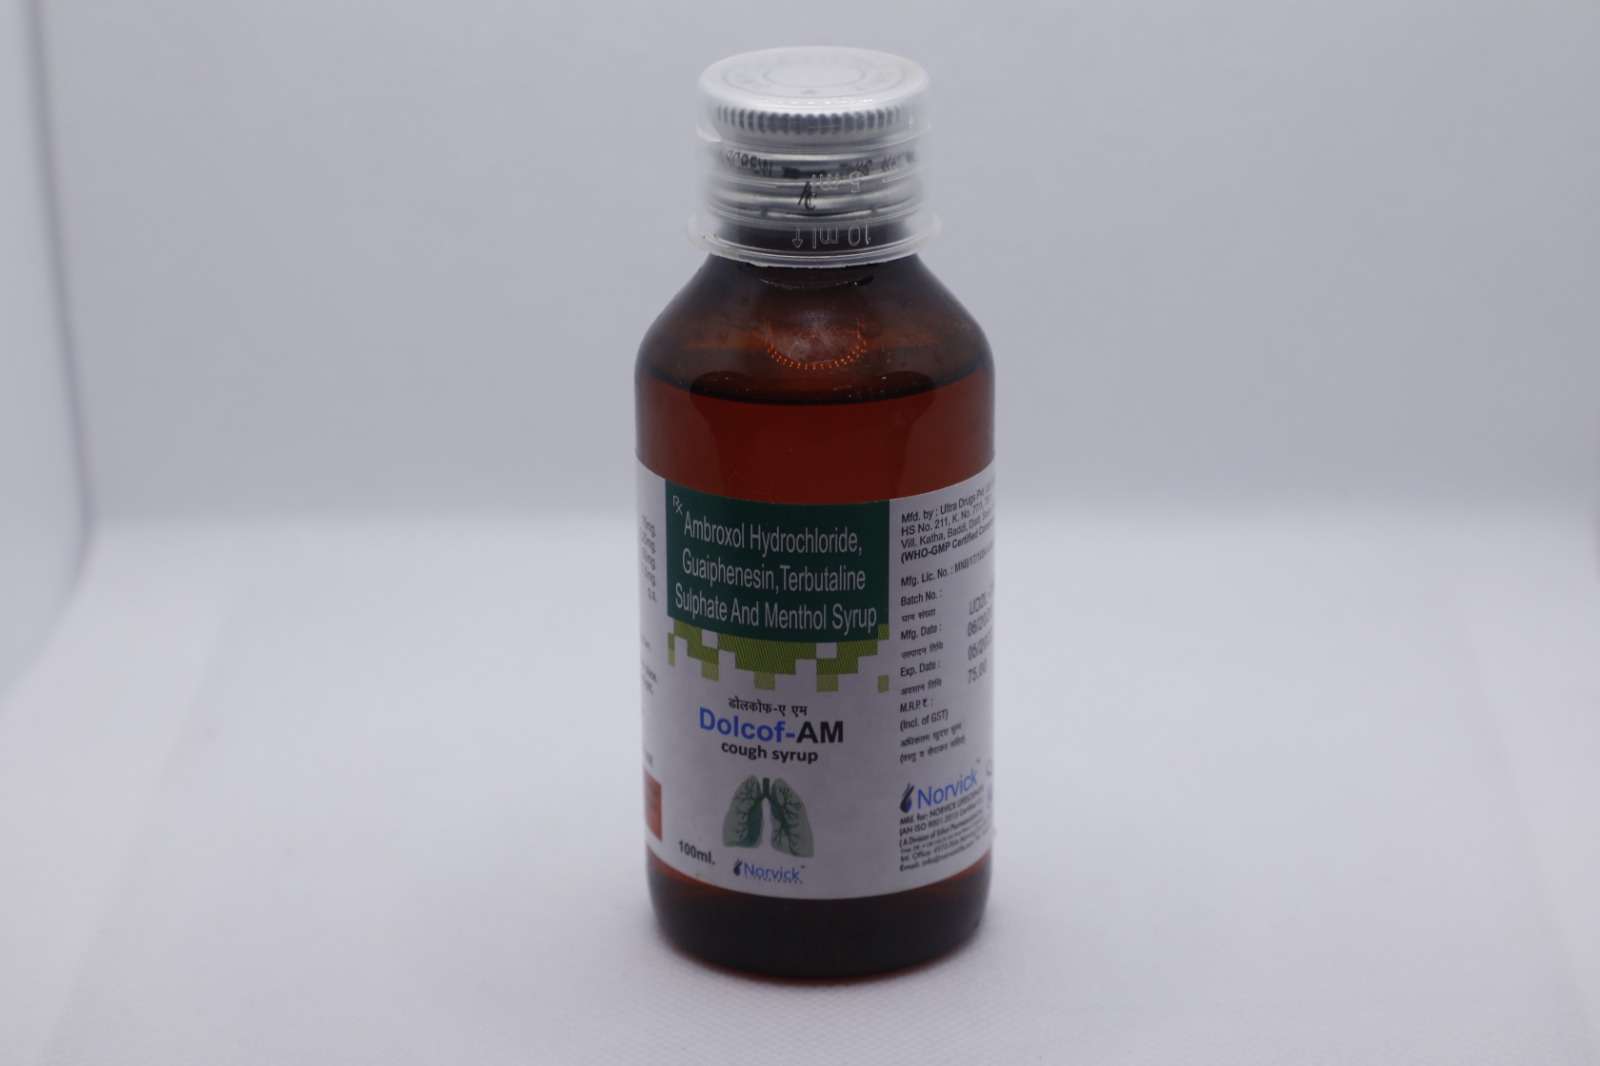 ambroxol 15 mg + guaifenesin 50mg+ terbutaline sulphate 1.25 mg + menthol2.5mg.